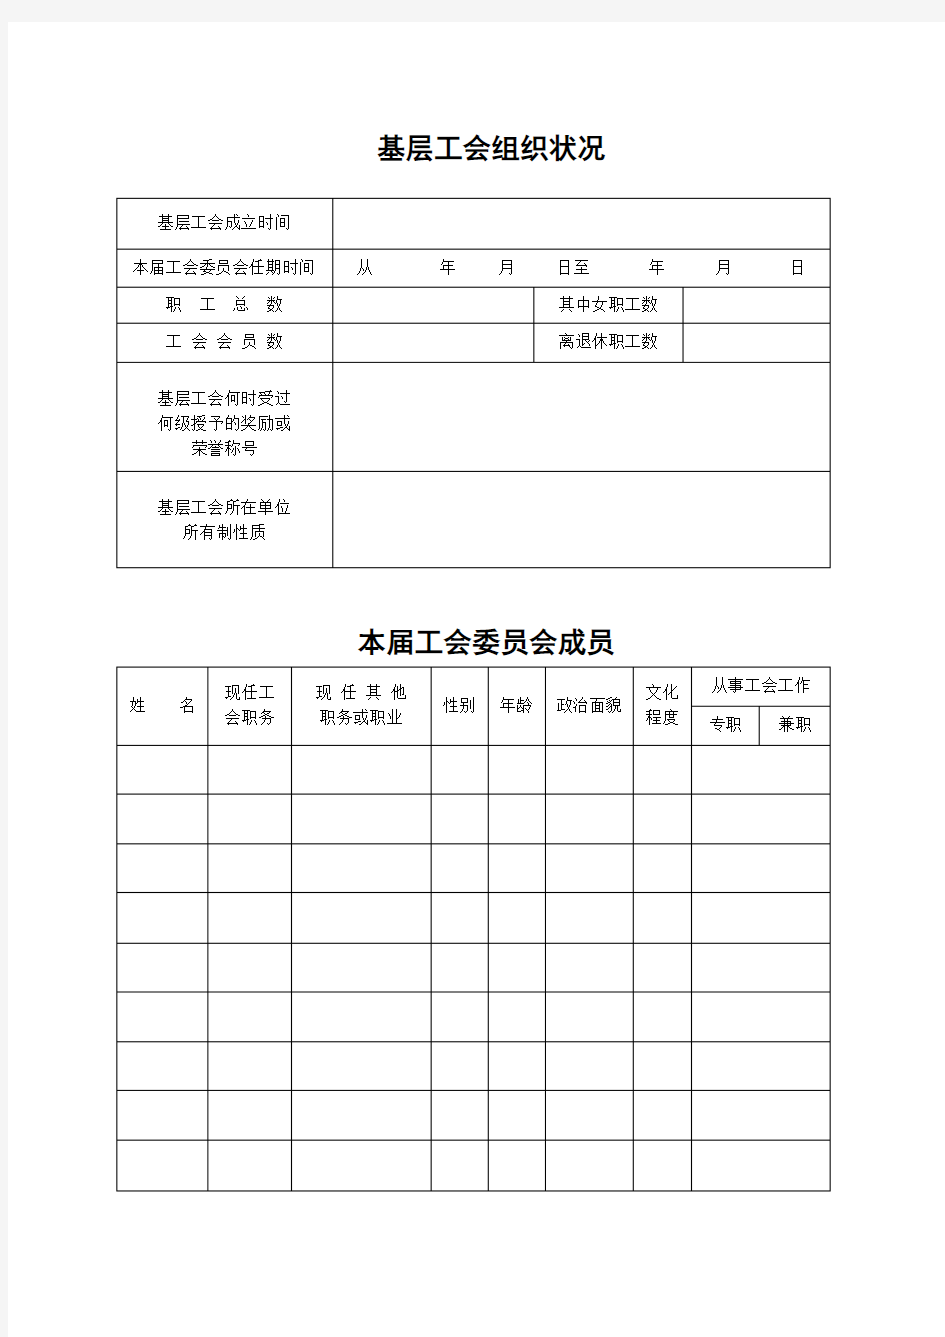 江苏省基层工会社团法人资格核准登记表111